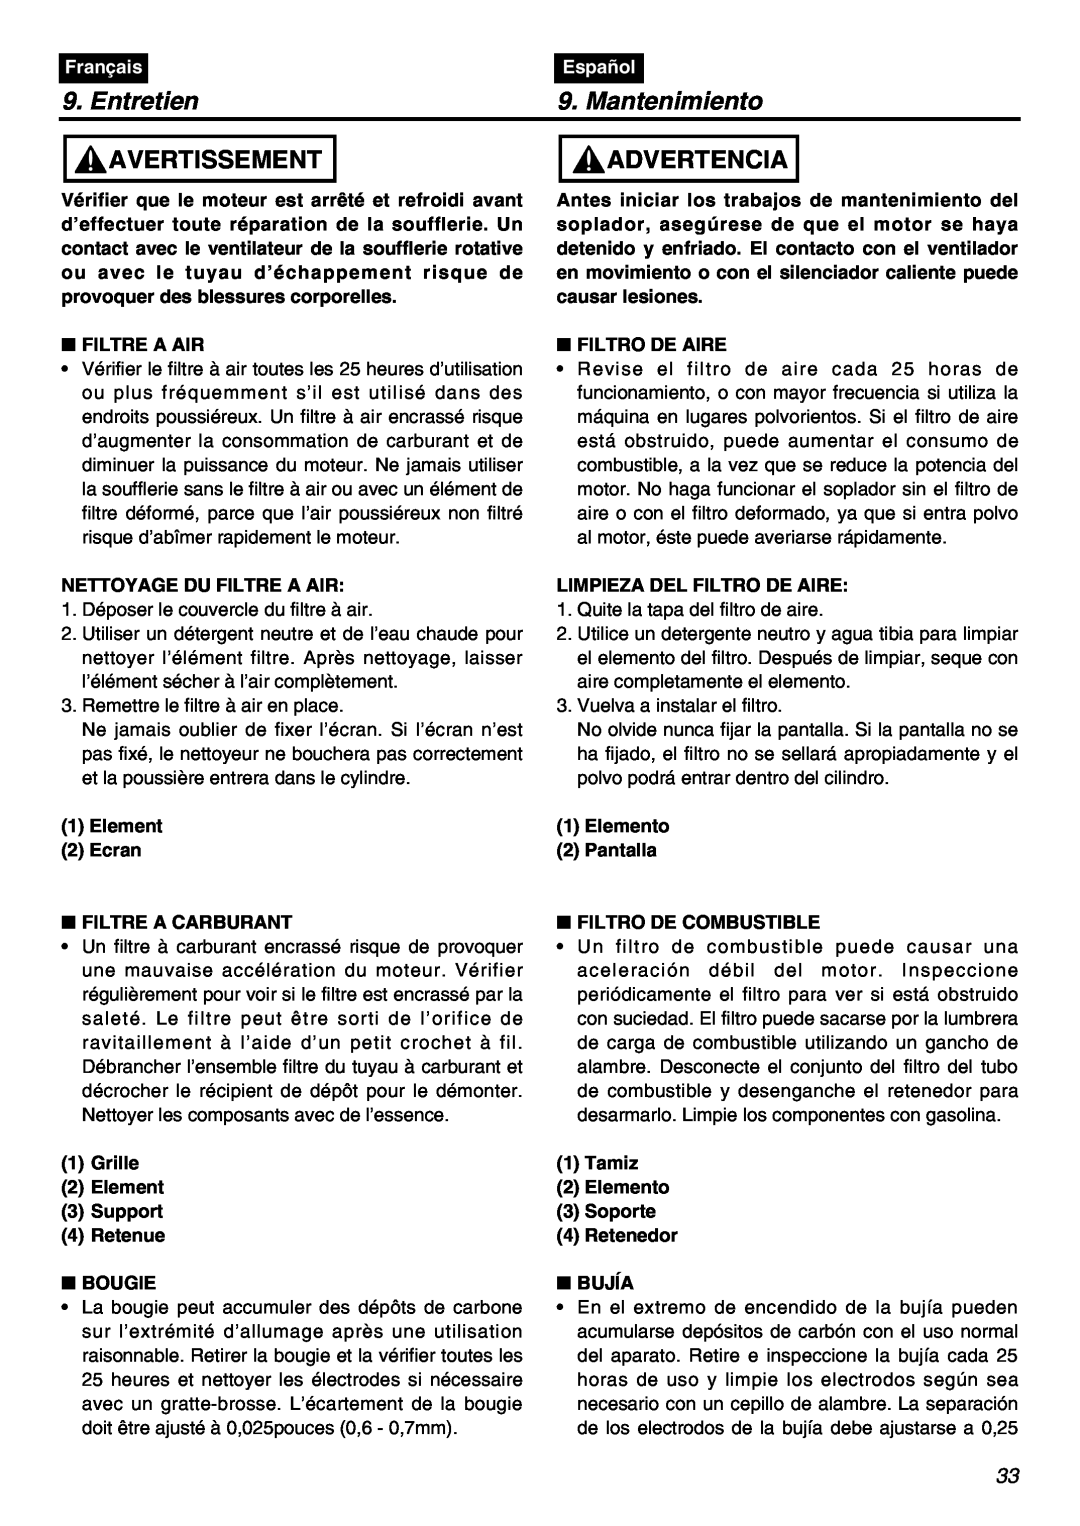 RedMax HBZ2601 manual Entretien, Mantenimiento, Avertissement, Advertencia, Français, Español, Filtre A Air, Filtro De Aire 